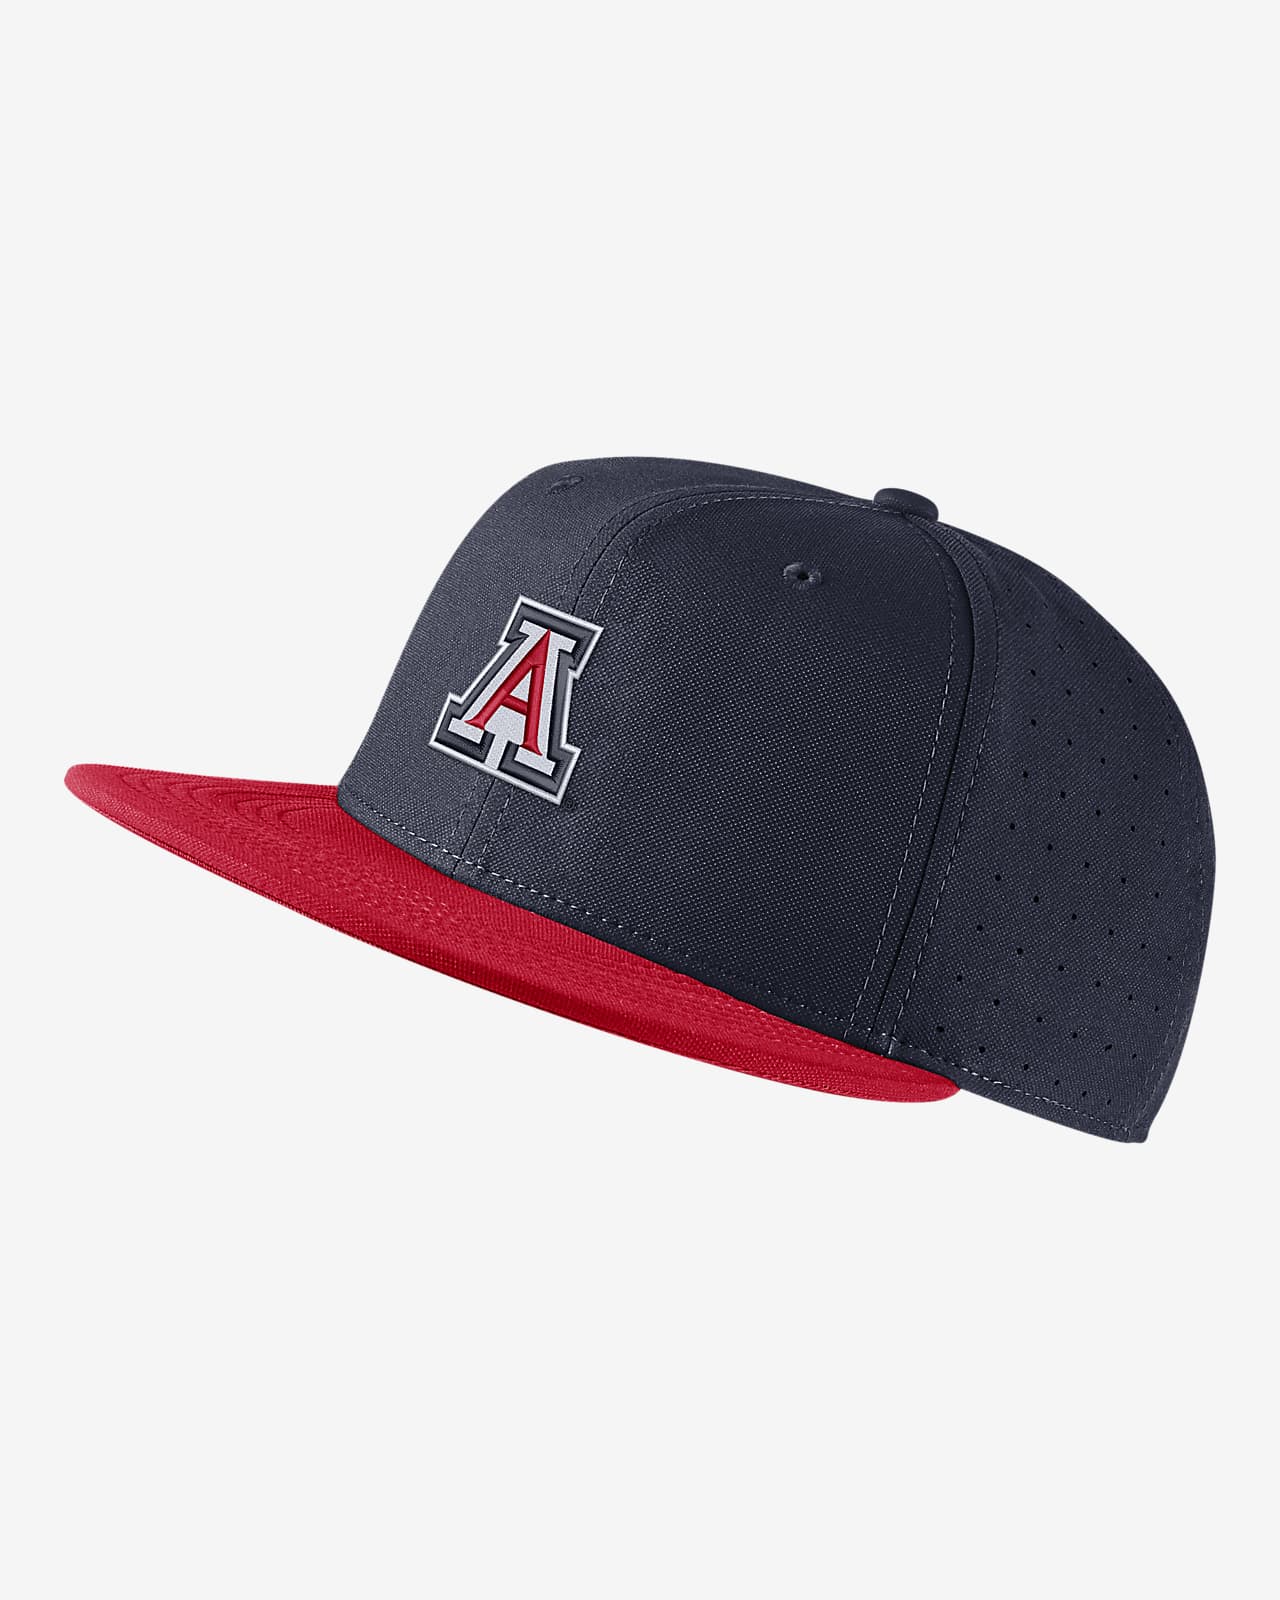 Arizona Nike College Fitted Baseball Hat